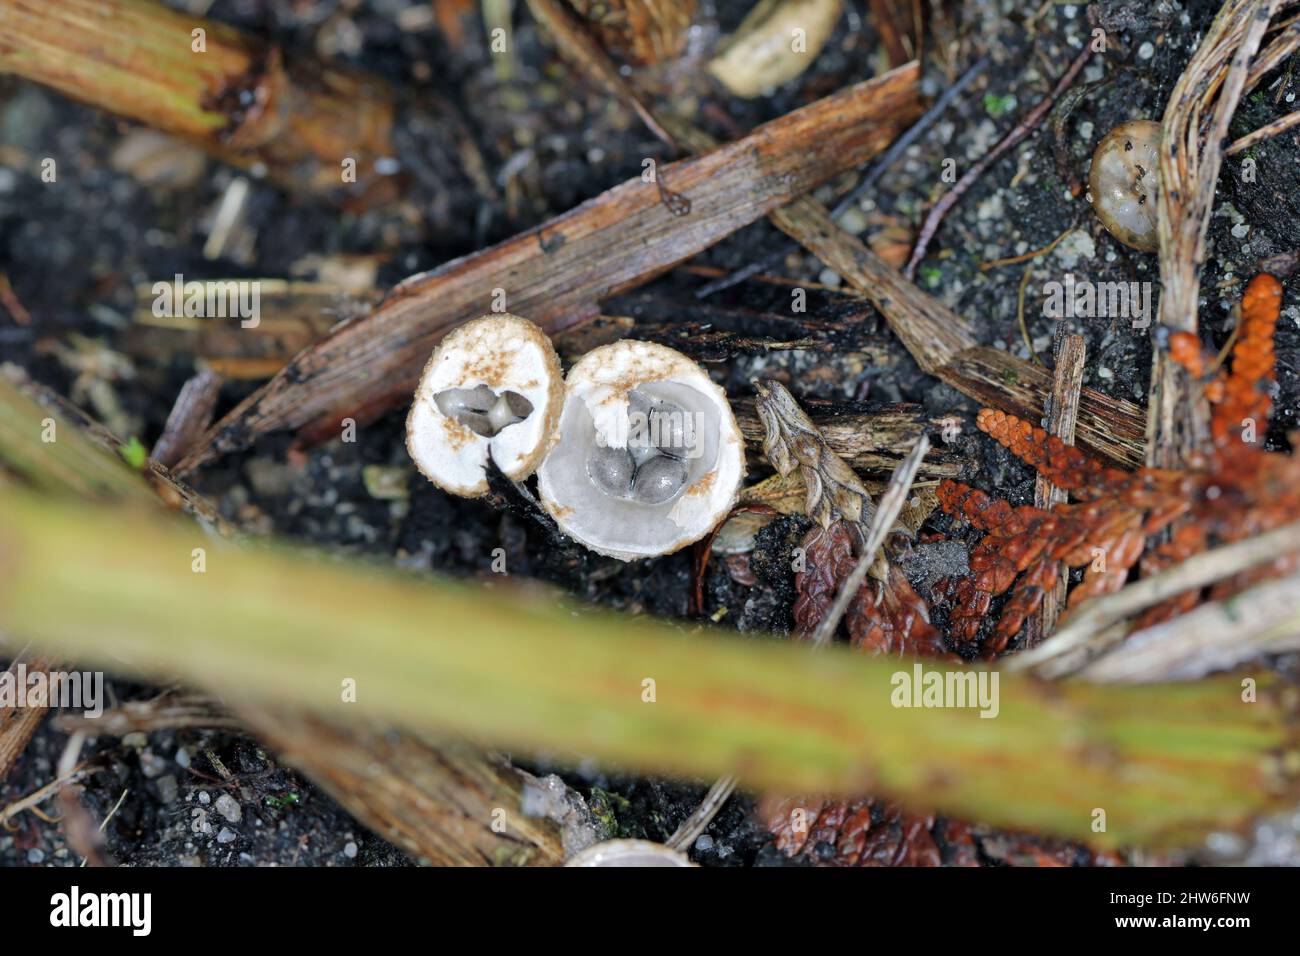 White Bird's Nest Pilz (Crucibulum laeve) Fruchtkörper mit Ei-förmigen peridioles innerhalb des "Nest". Stockfoto